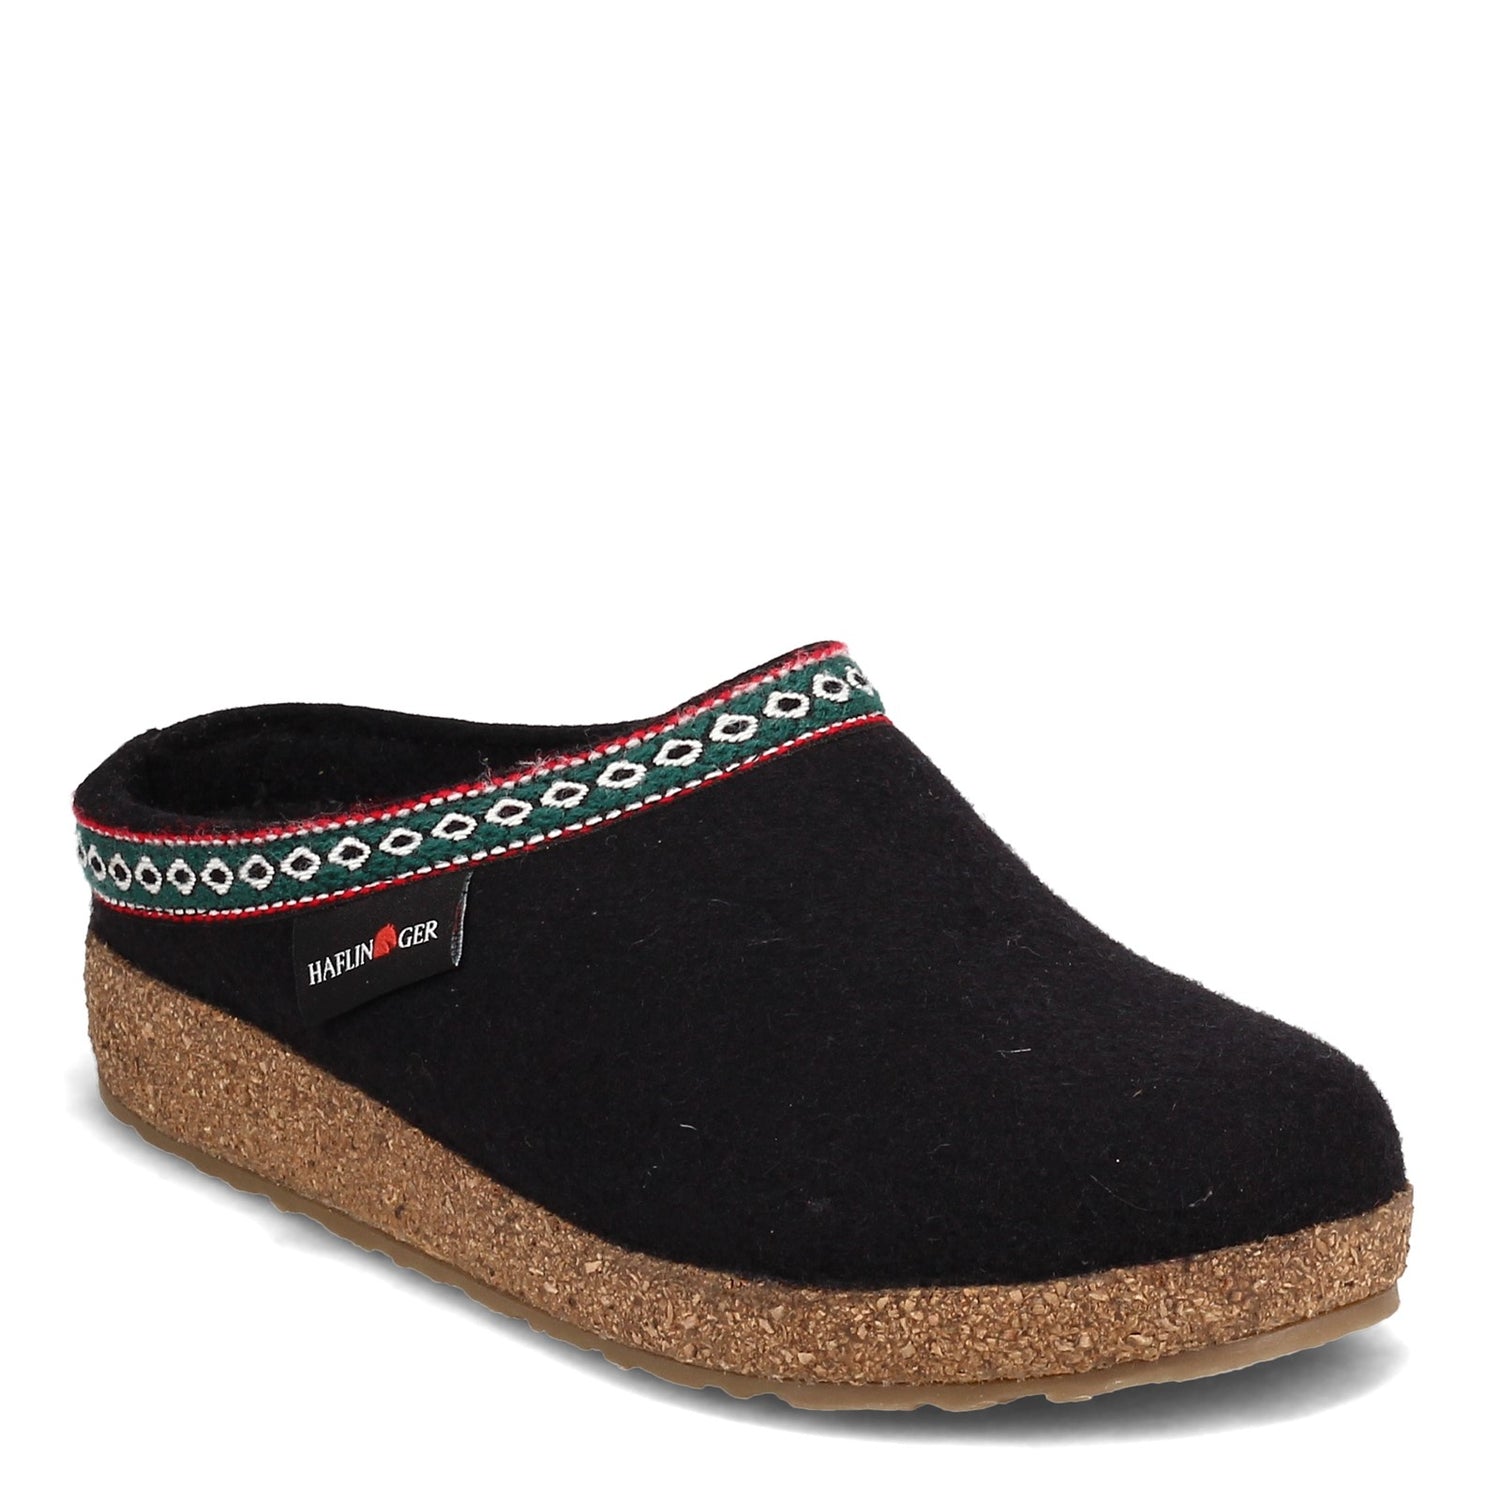 Peltz Shoes  Unisex Haflinger Grizzly Classic Wool Clog BLACK 711001-3